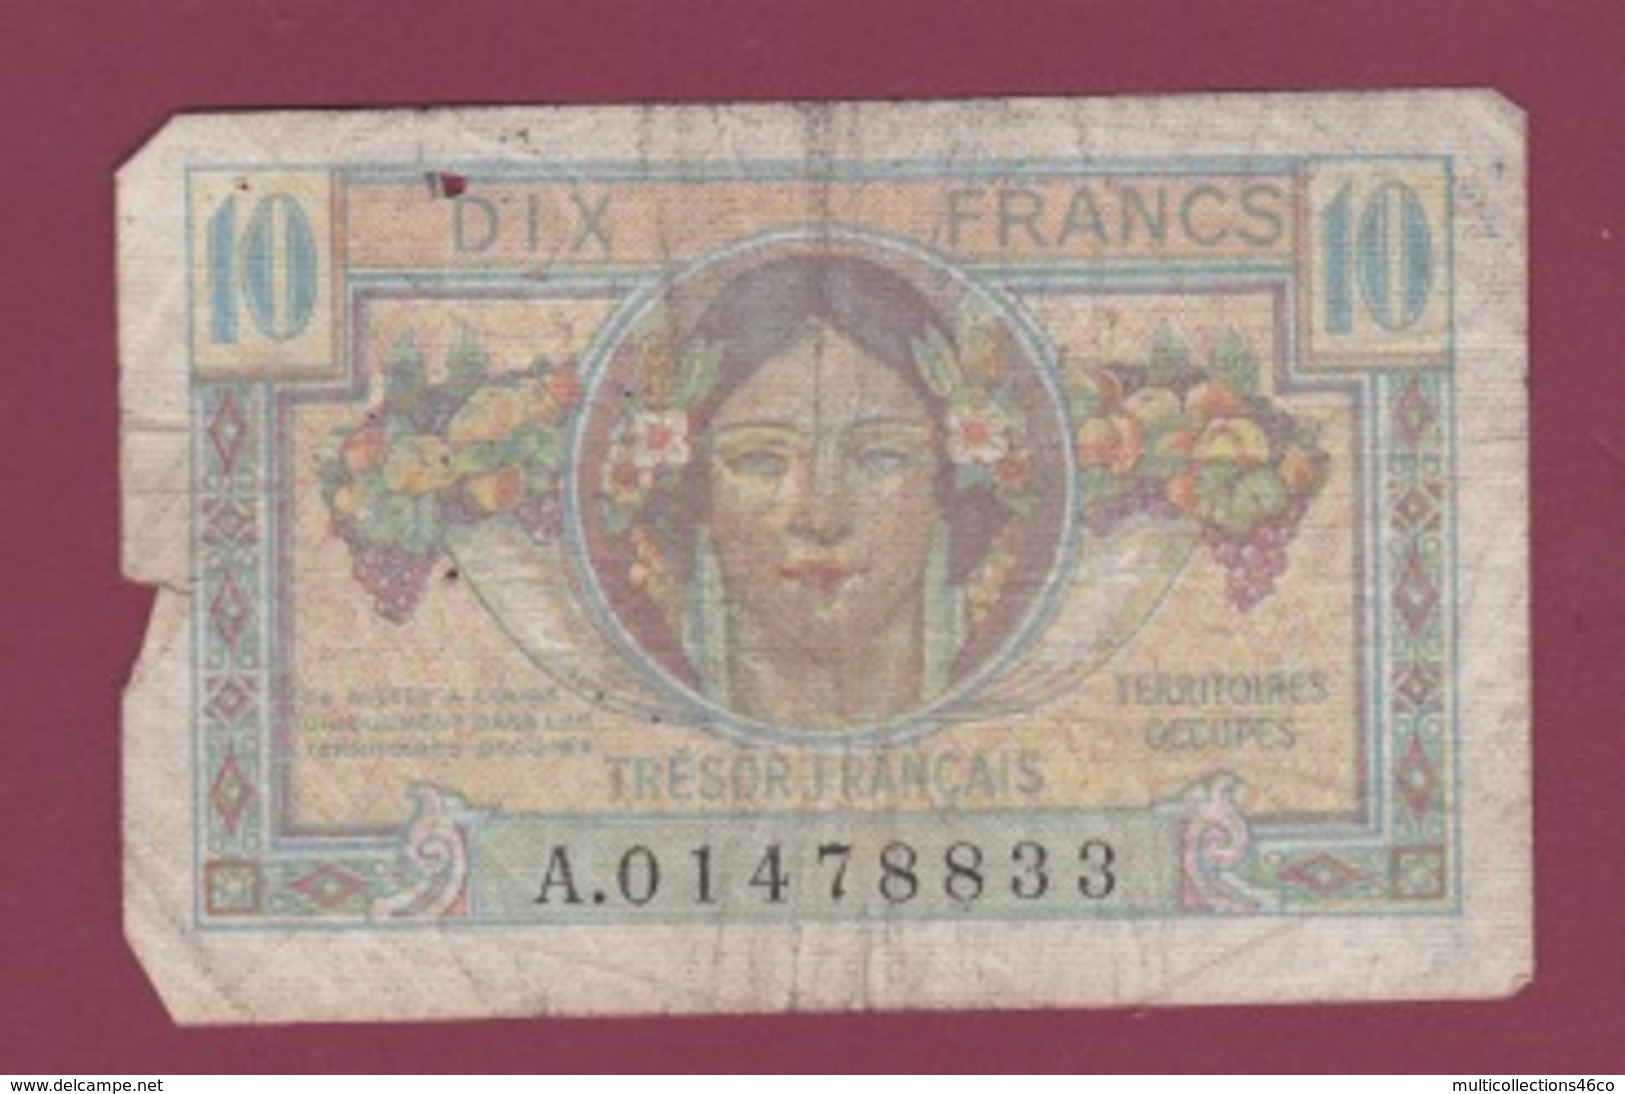 100619A - BILLET Trésor Français Territoires Occupés 10 Dix Francs A01478833 - Moisson Fauchage - 1947 French Treasury